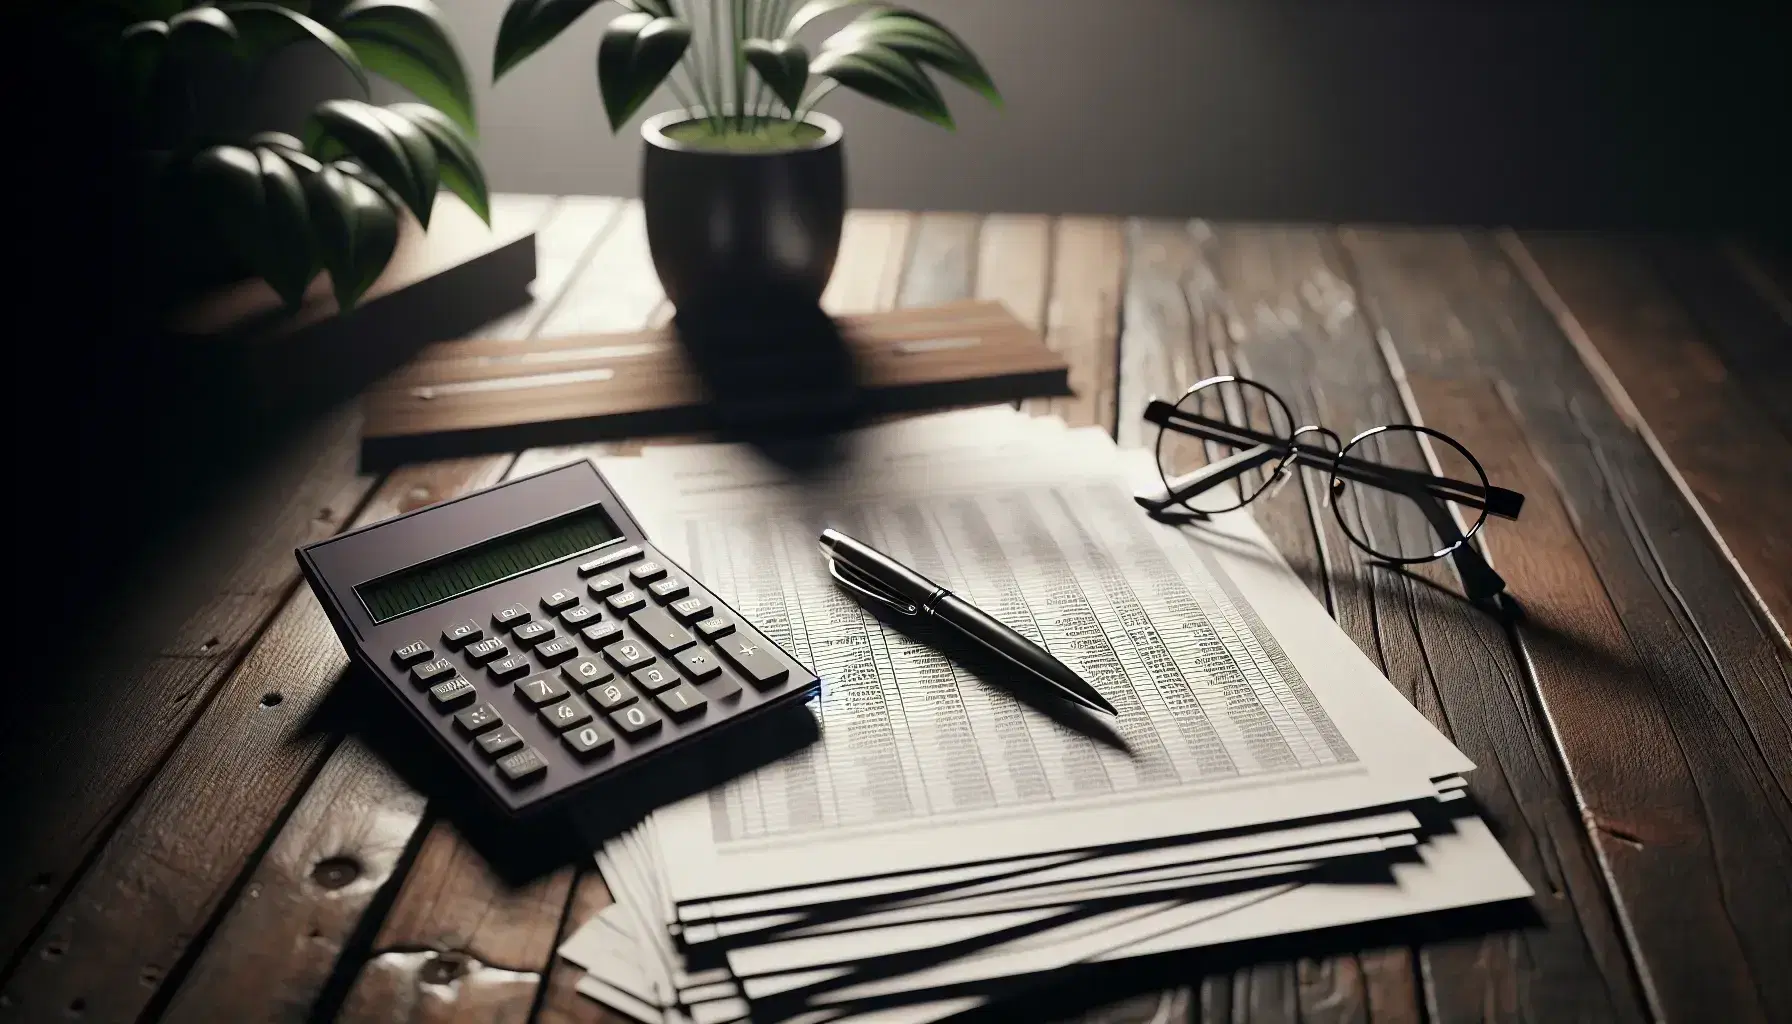 Mesa de madera oscura con calculadora gris, papeles de contabilidad, gafas metálicas y bolígrafo negro, con planta desenfocada al fondo.